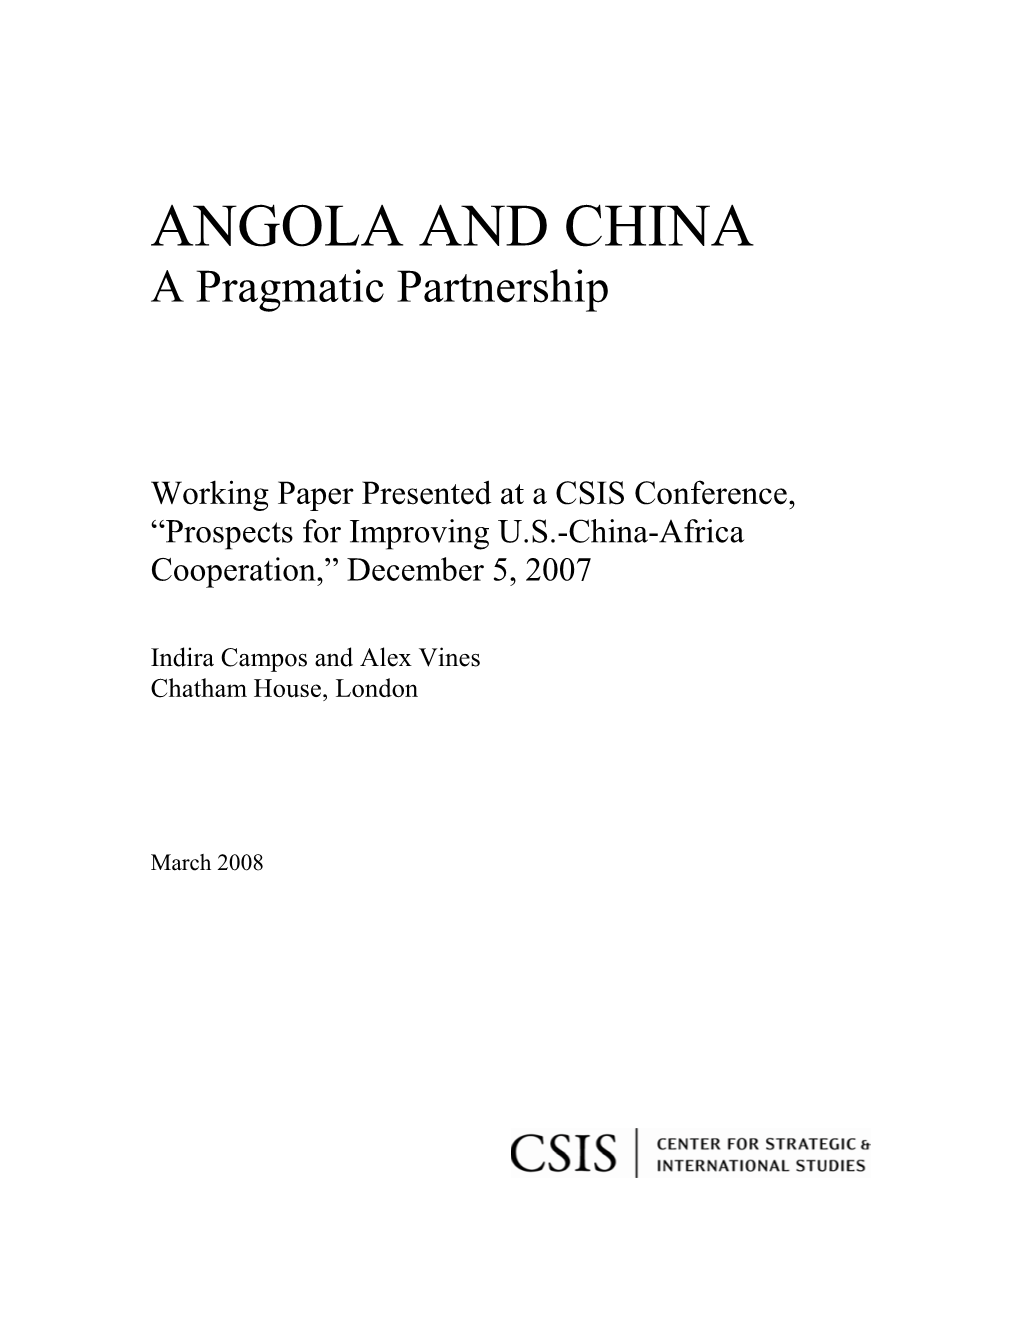 ANGOLA and CHINA a Pragmatic Partnership